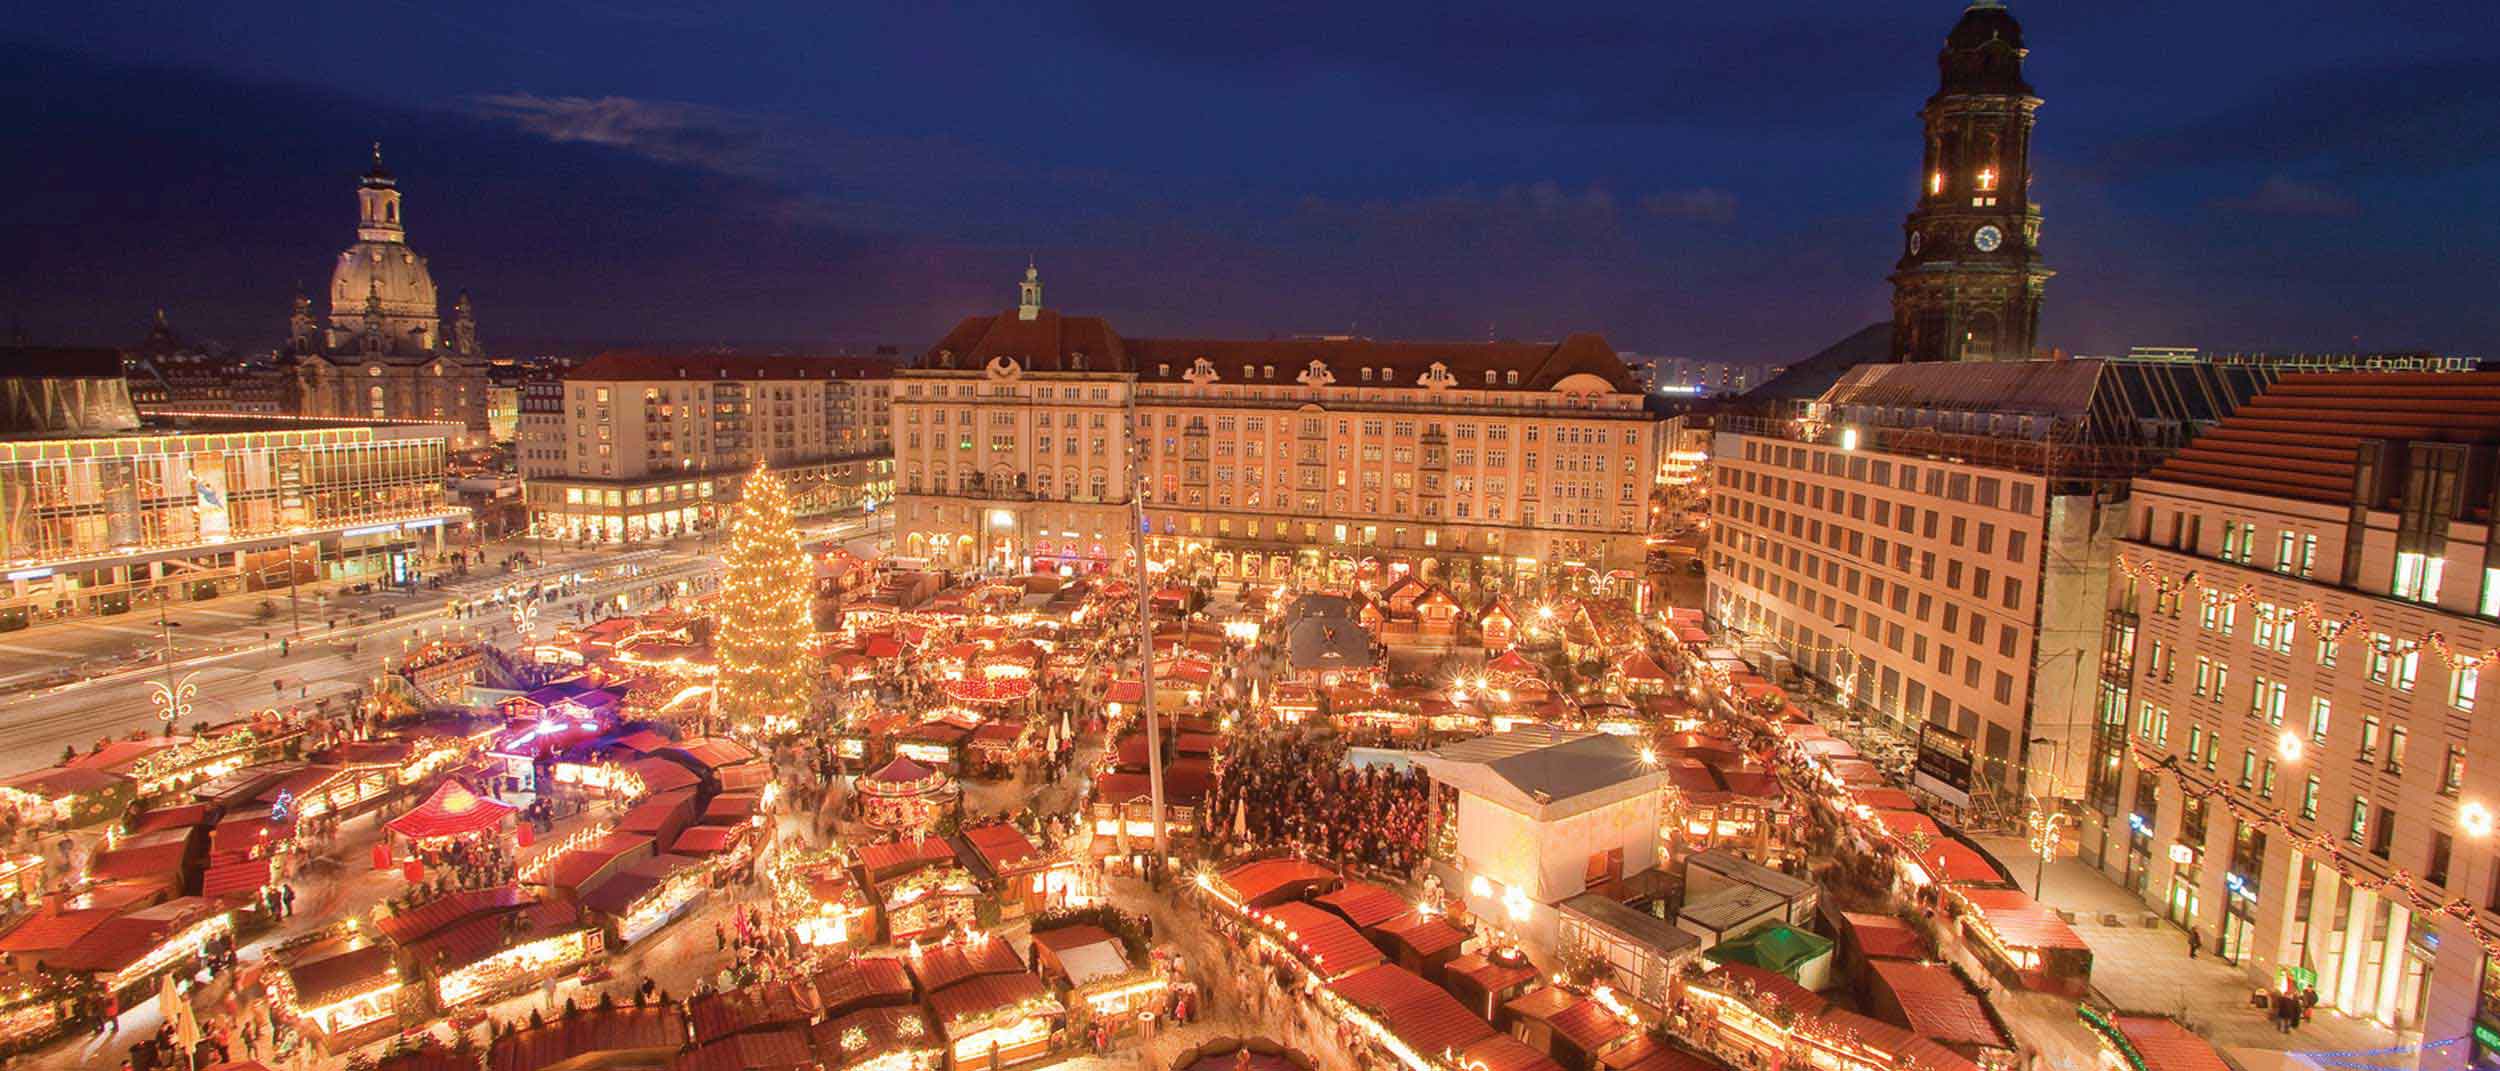 Christmas Markets of Germany & Austria: Nov 29-Dec 7, 2018 | Bursch ...